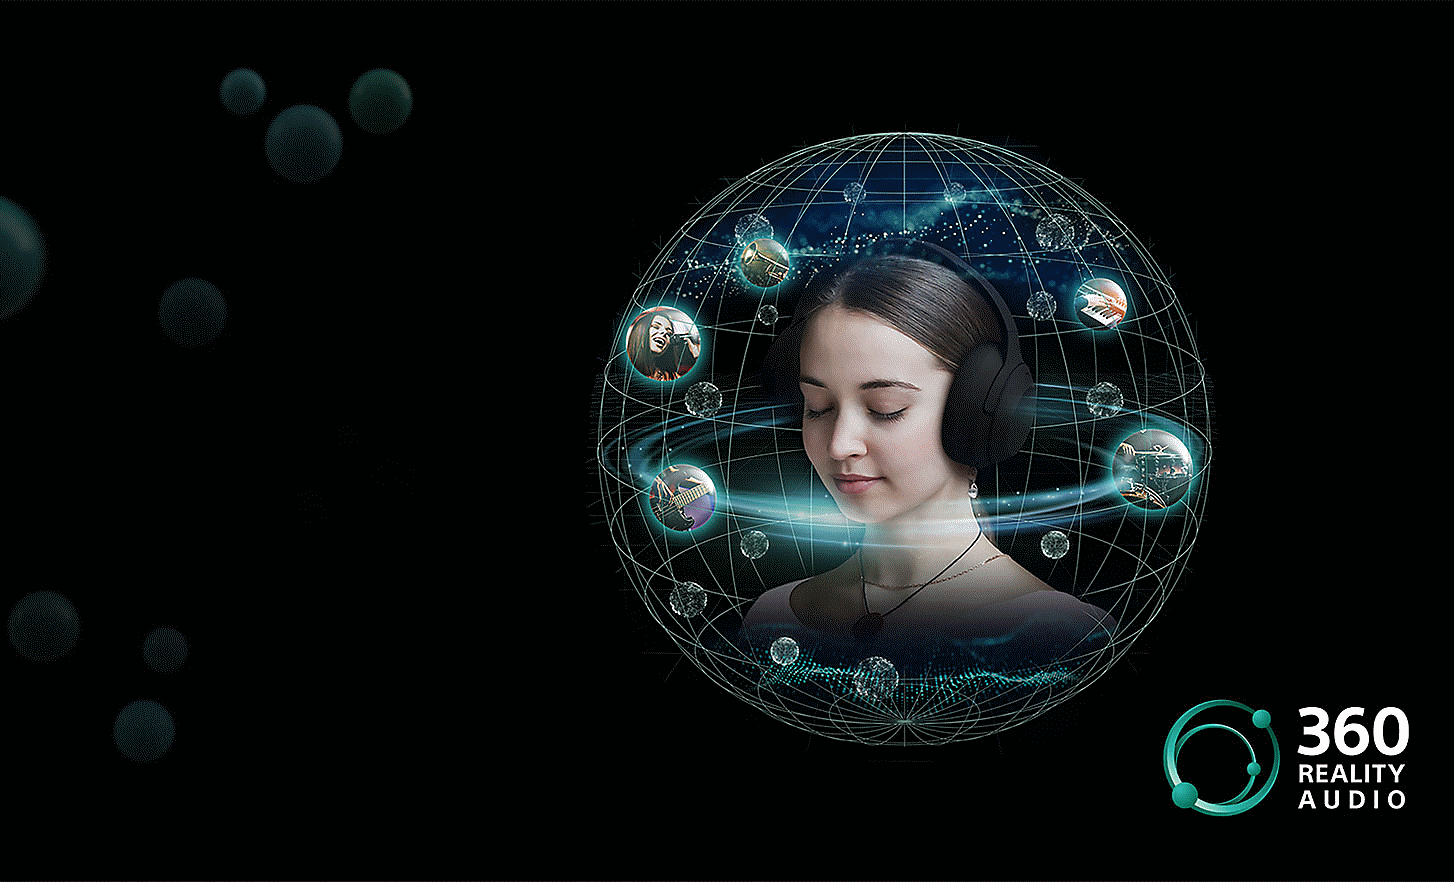 Bild einer Frau mit Kopfhörern in einem kugelförmigen Netz mit verschiedenen Bildern, die ihren Kopf umkreisen